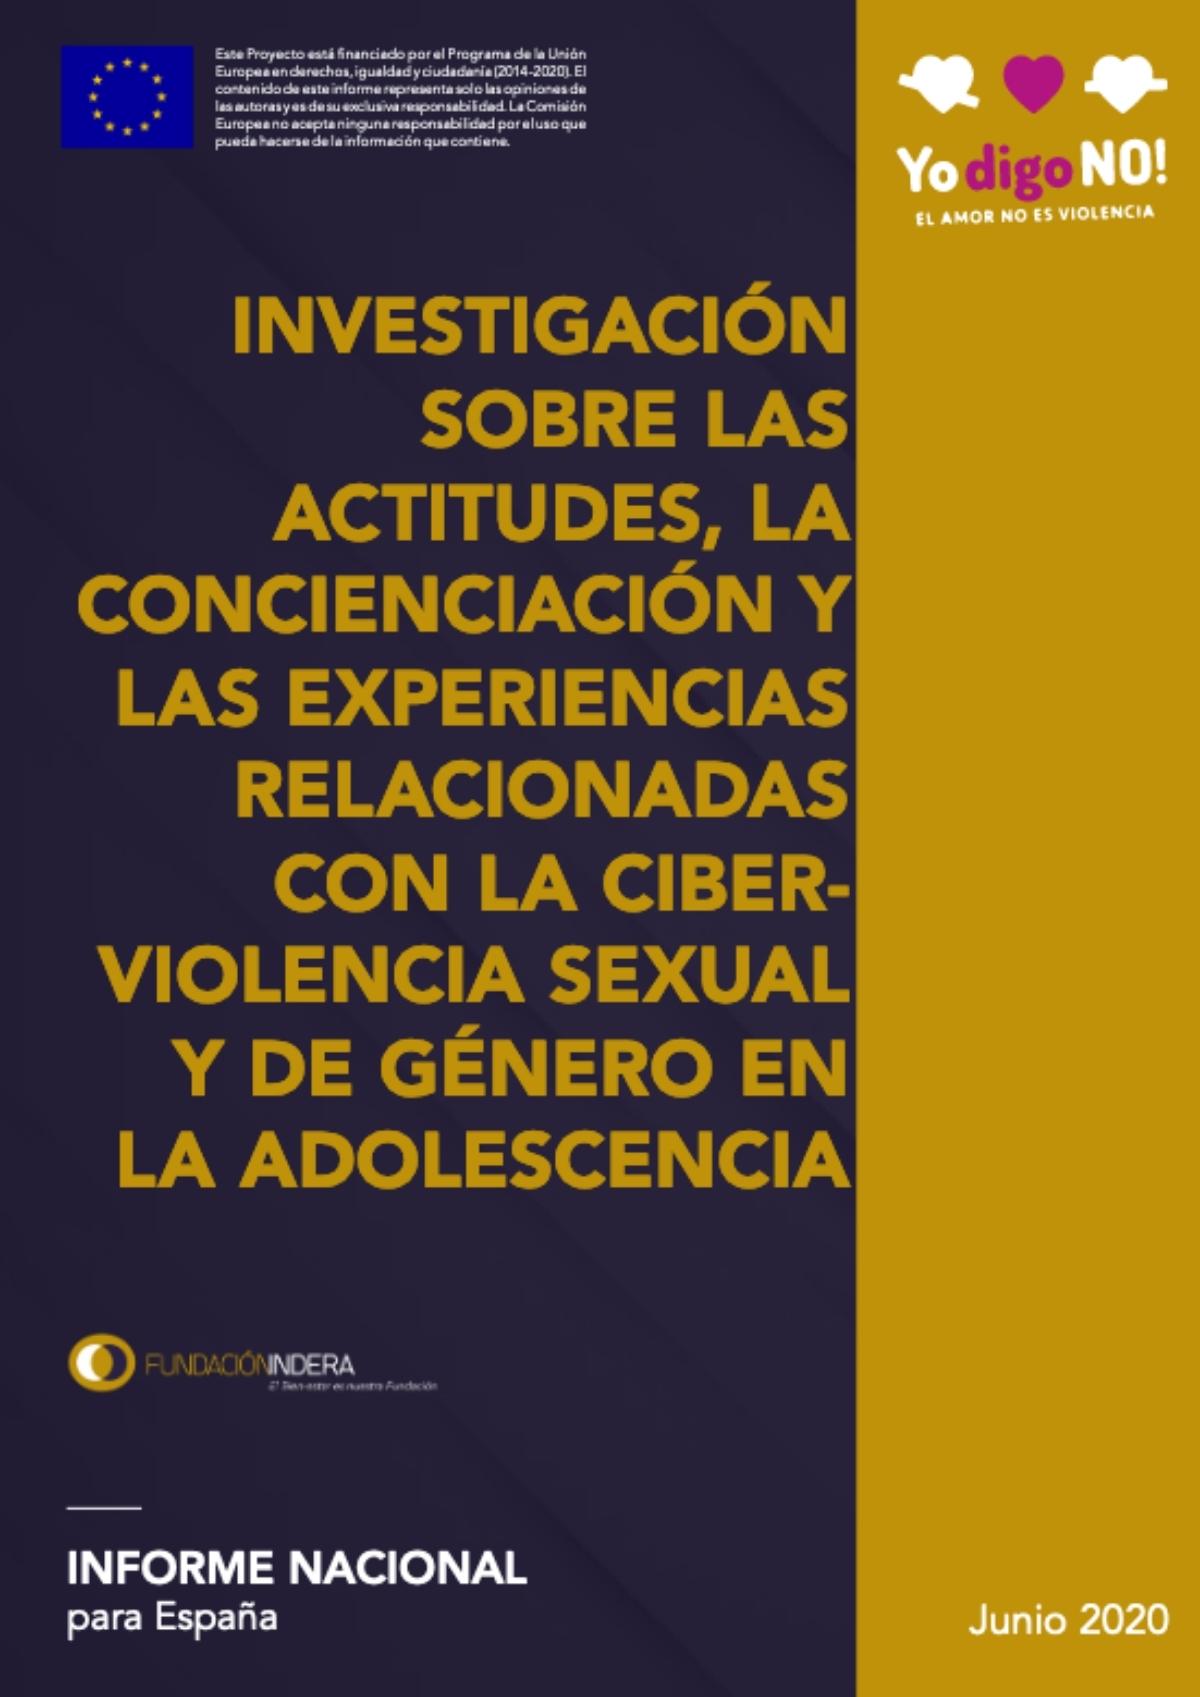 Investigación sobre las actitudes la concienciación y las experiencias relacionadas con la ciberviolencia sexual y de género en la adolescencia en España ES